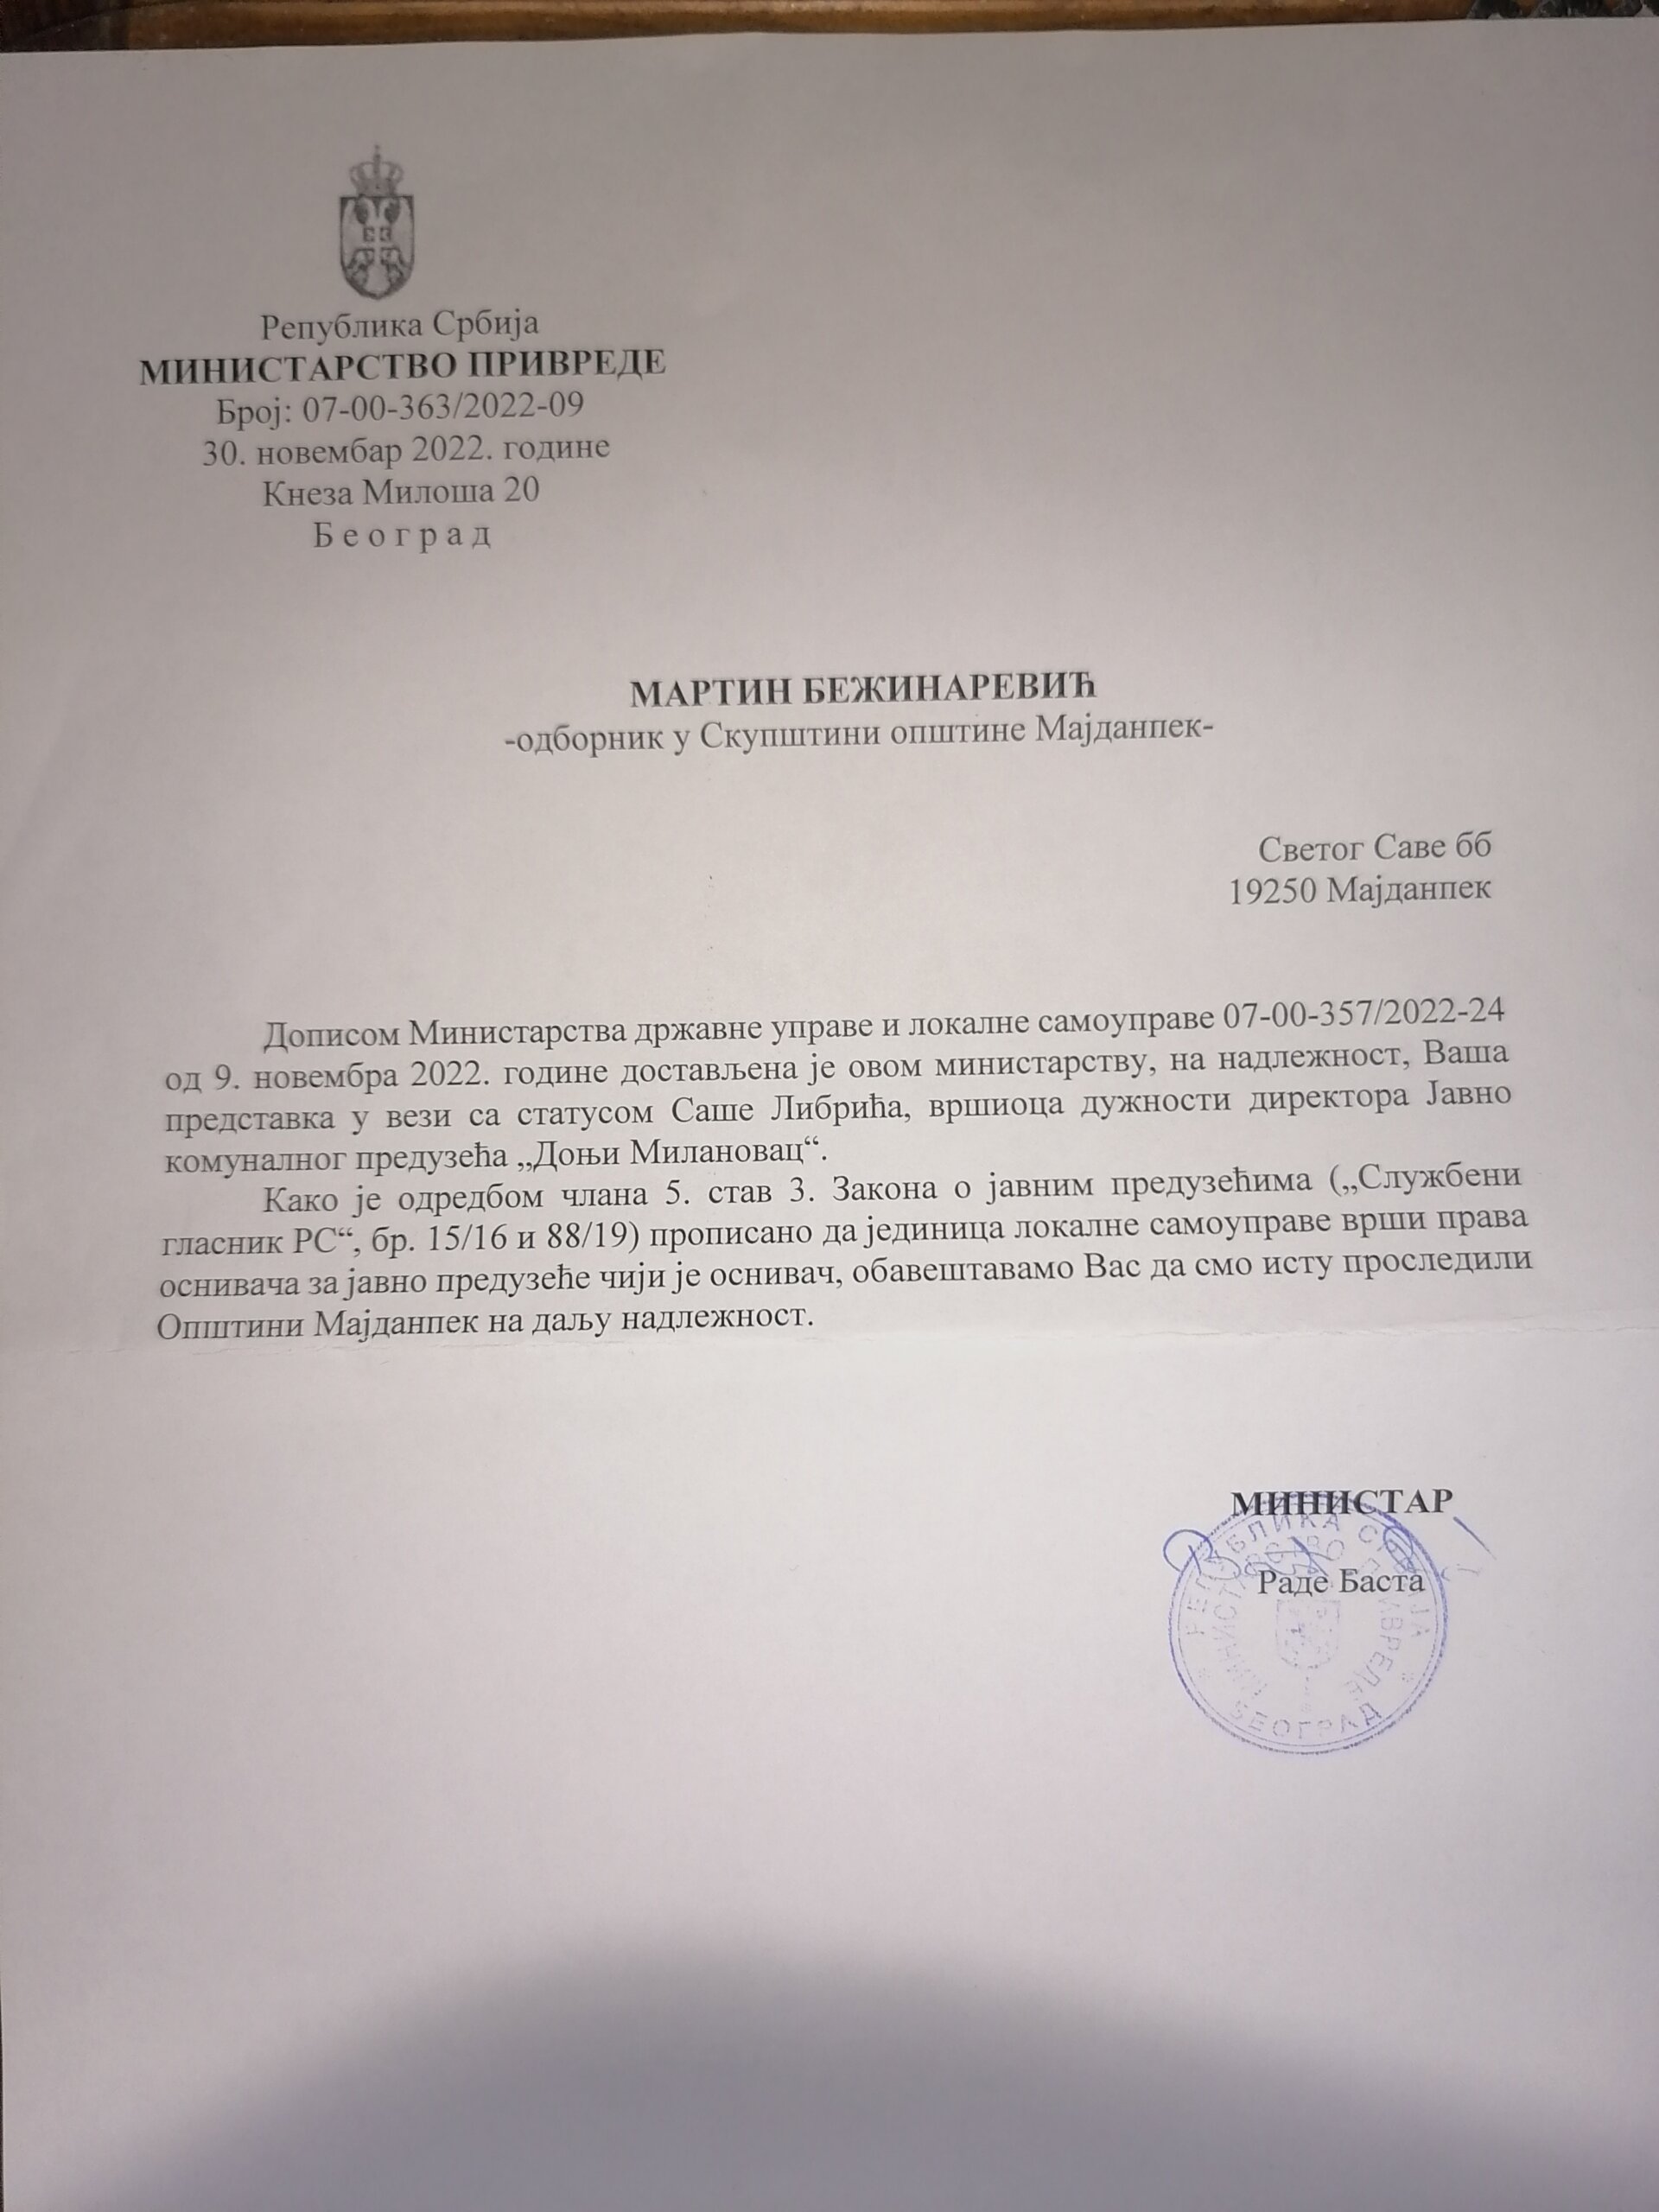 Ministarstvo privrede odgovorilo odborniku SO Majdanpek: Za razrešenje v.d. direktora JKP "Donji Milanovac" nadležna Opština Majdanpek 2